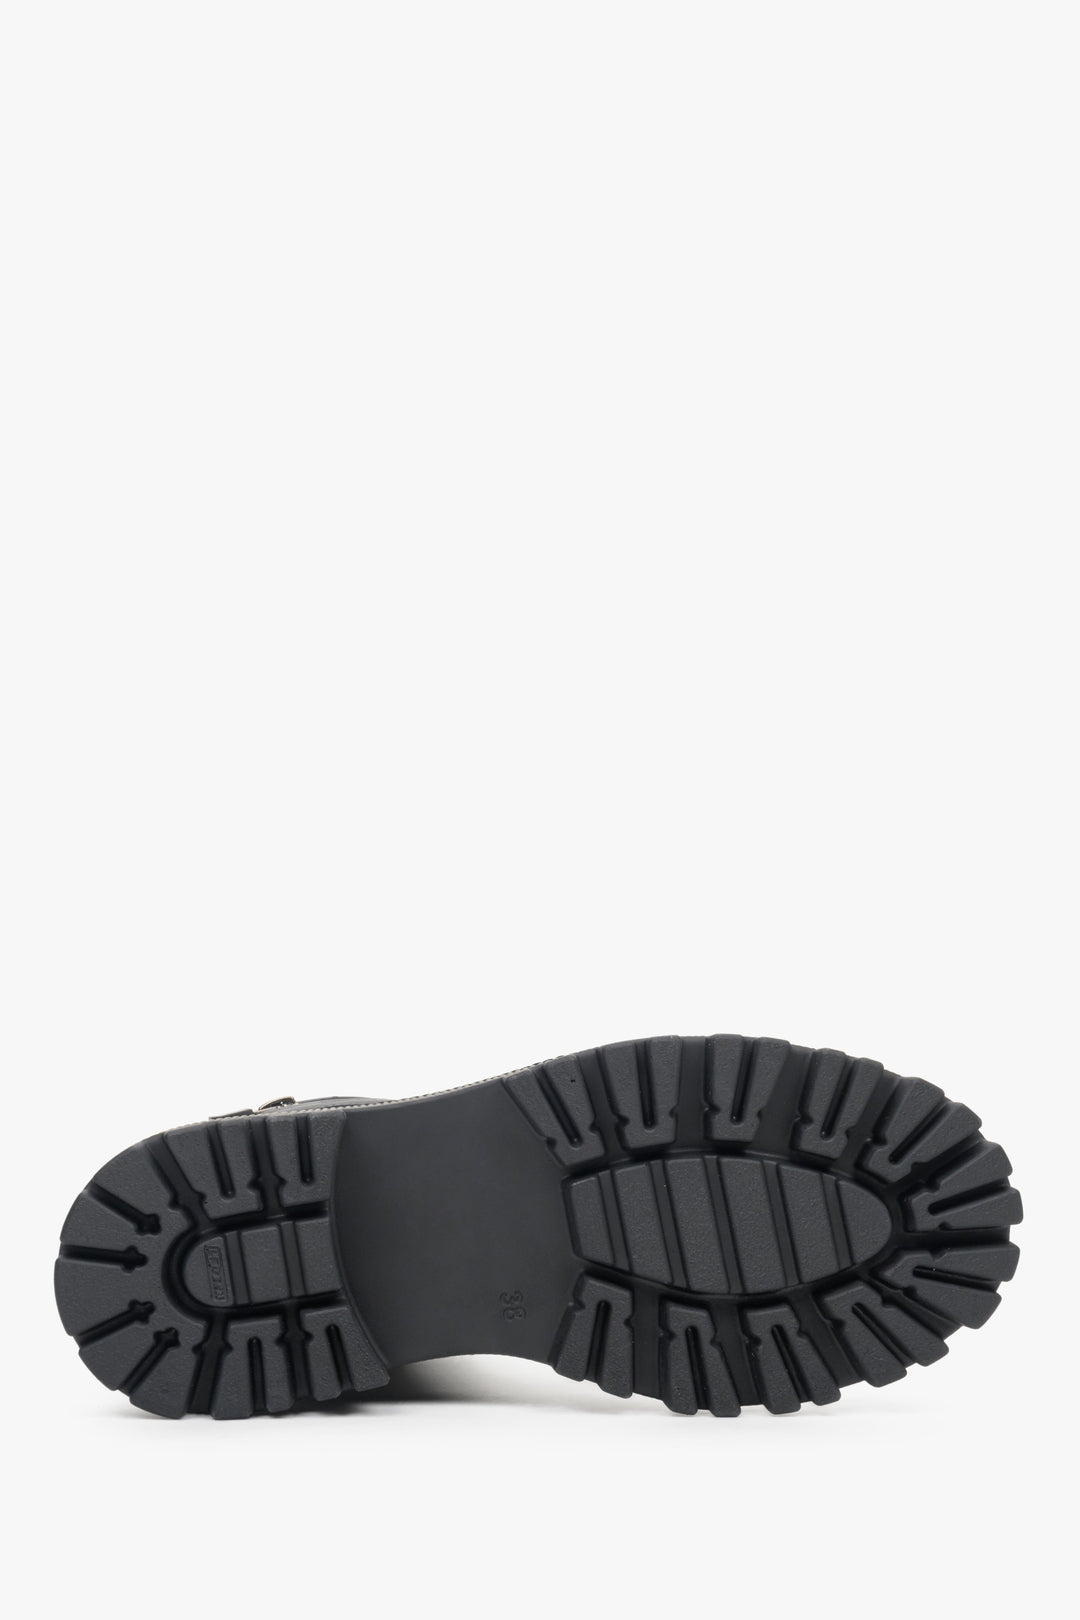 Damskie botki zimowe w kolorze czarnym ze skóry naturalnej Estro - zbliżenie na podeszwę buta.